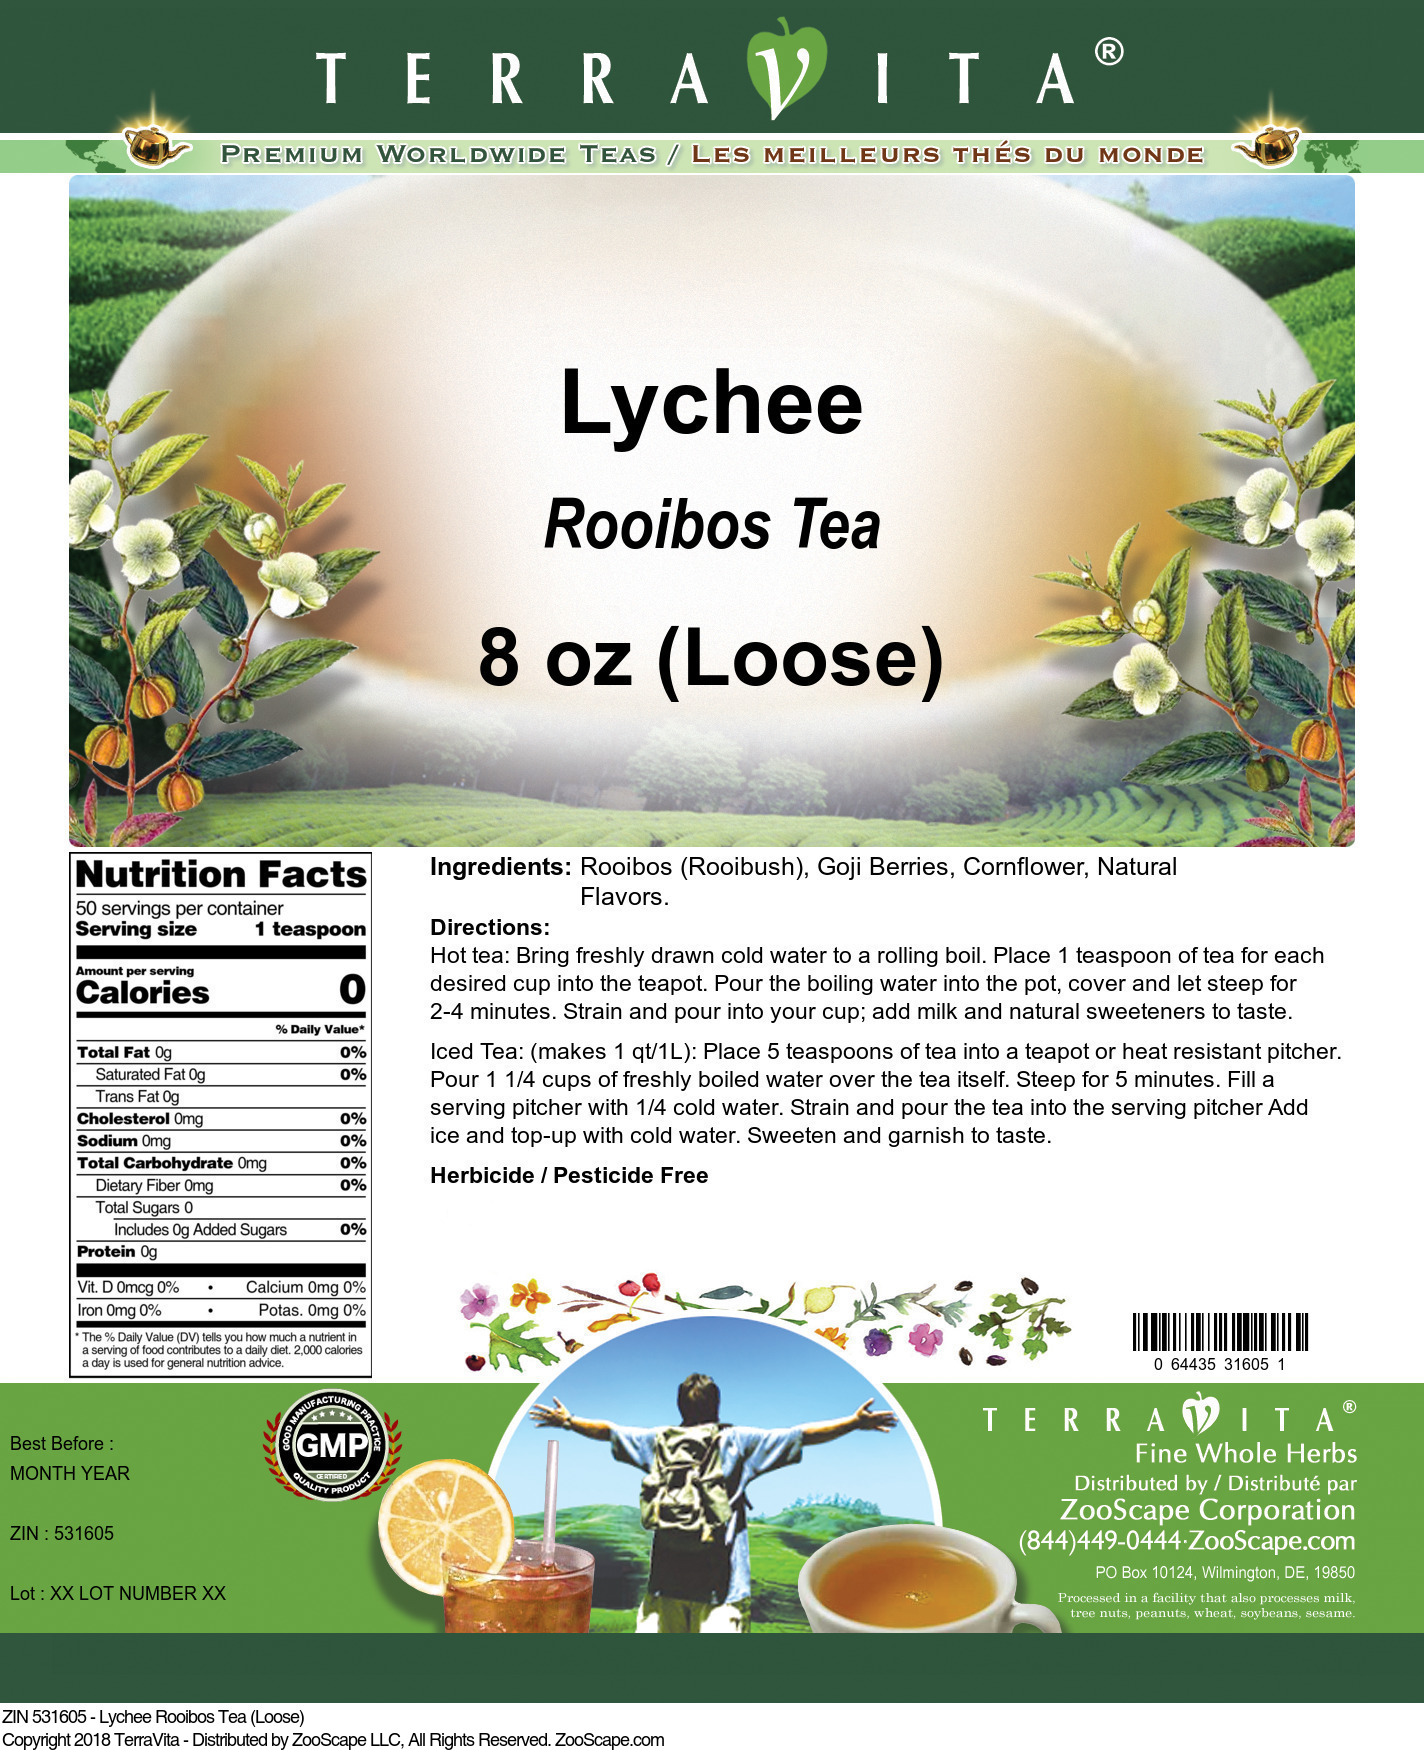 Lychee Rooibos Tea (Loose) - Label